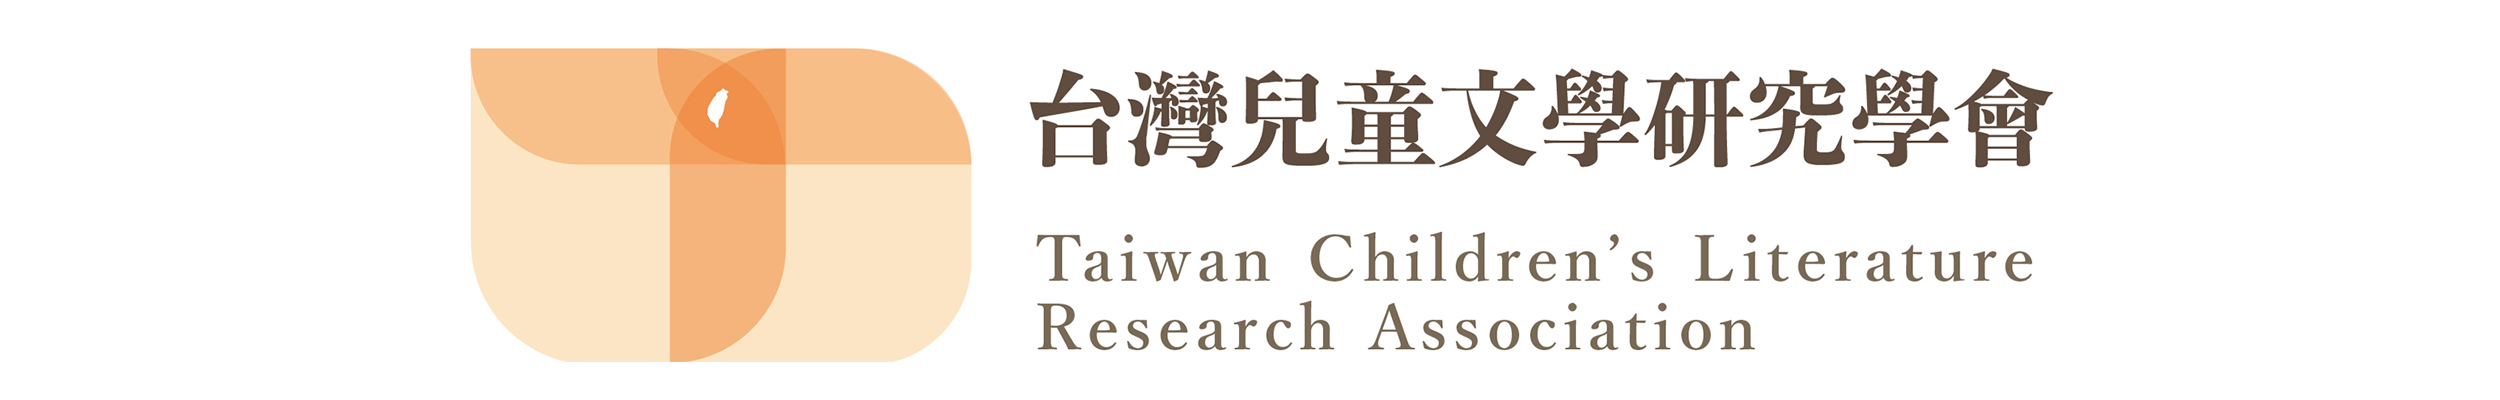 TCLRA 台灣兒童文學研究學會